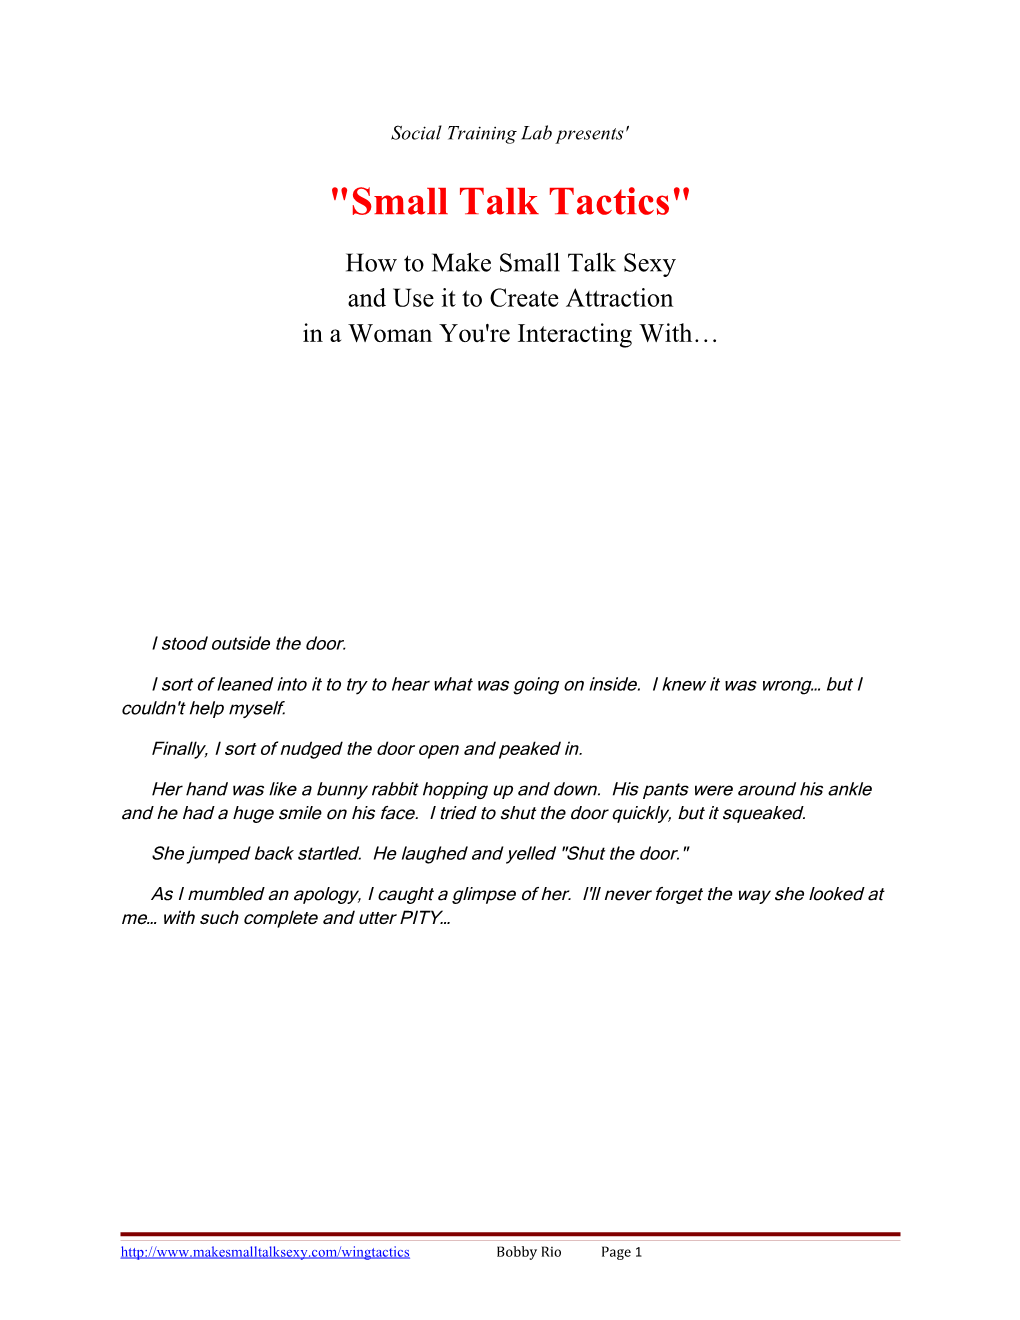 Social Training Lab Presents' Small Talk Tactics